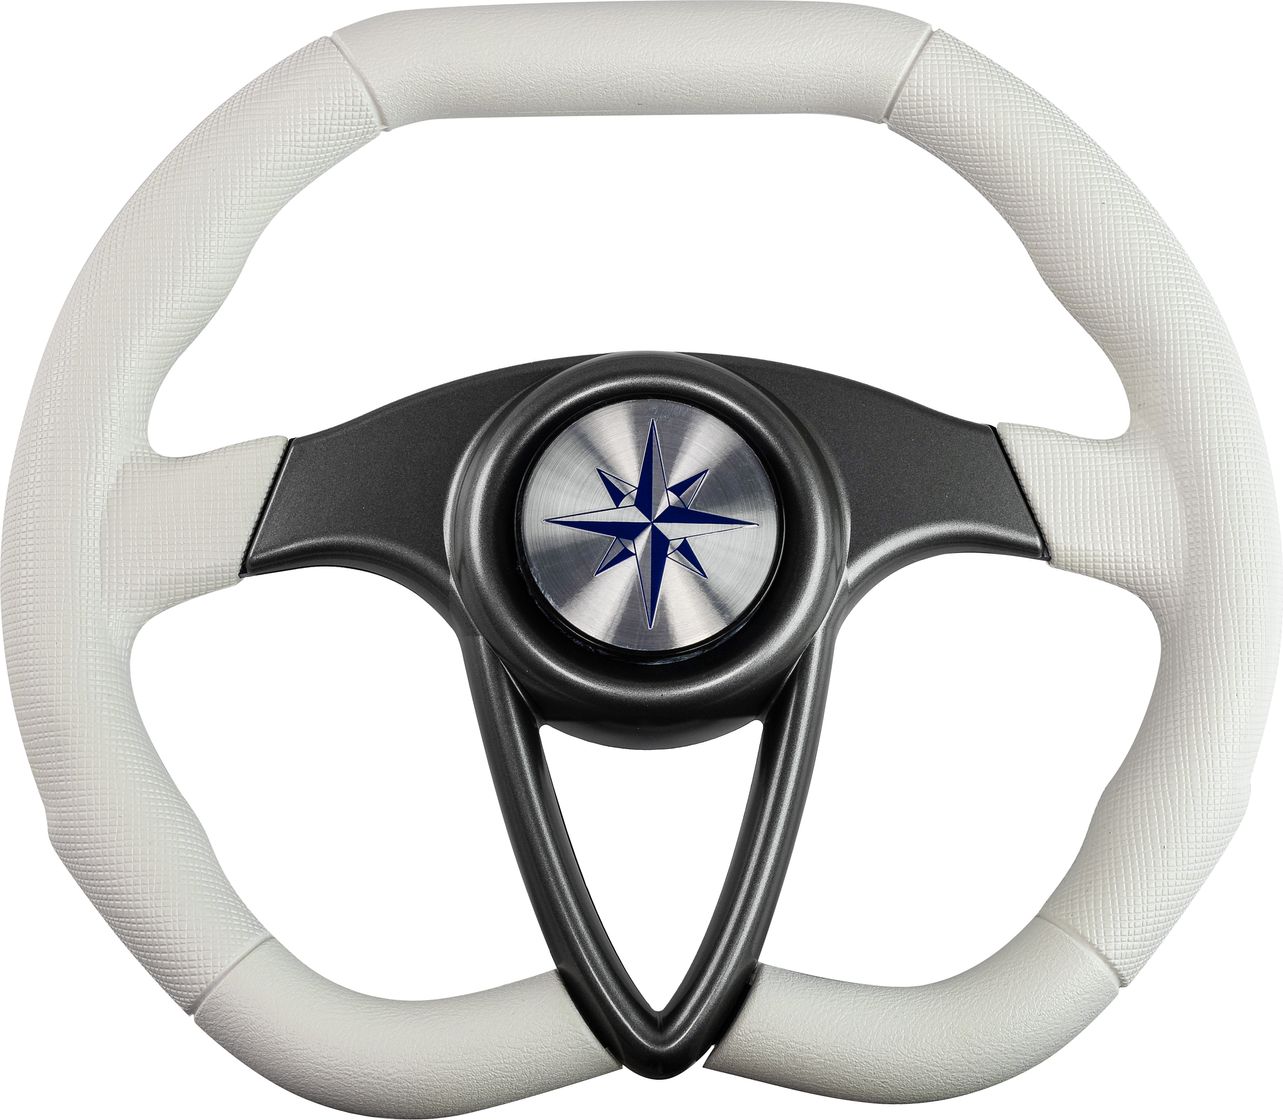 Рулевое колесо BARRACUDA обод белый, спицы серебряные д. 350 мм VN135002-08 рулевое колесо lipari обод белый спицы серебряные д 280 мм со спинером vn828050 08